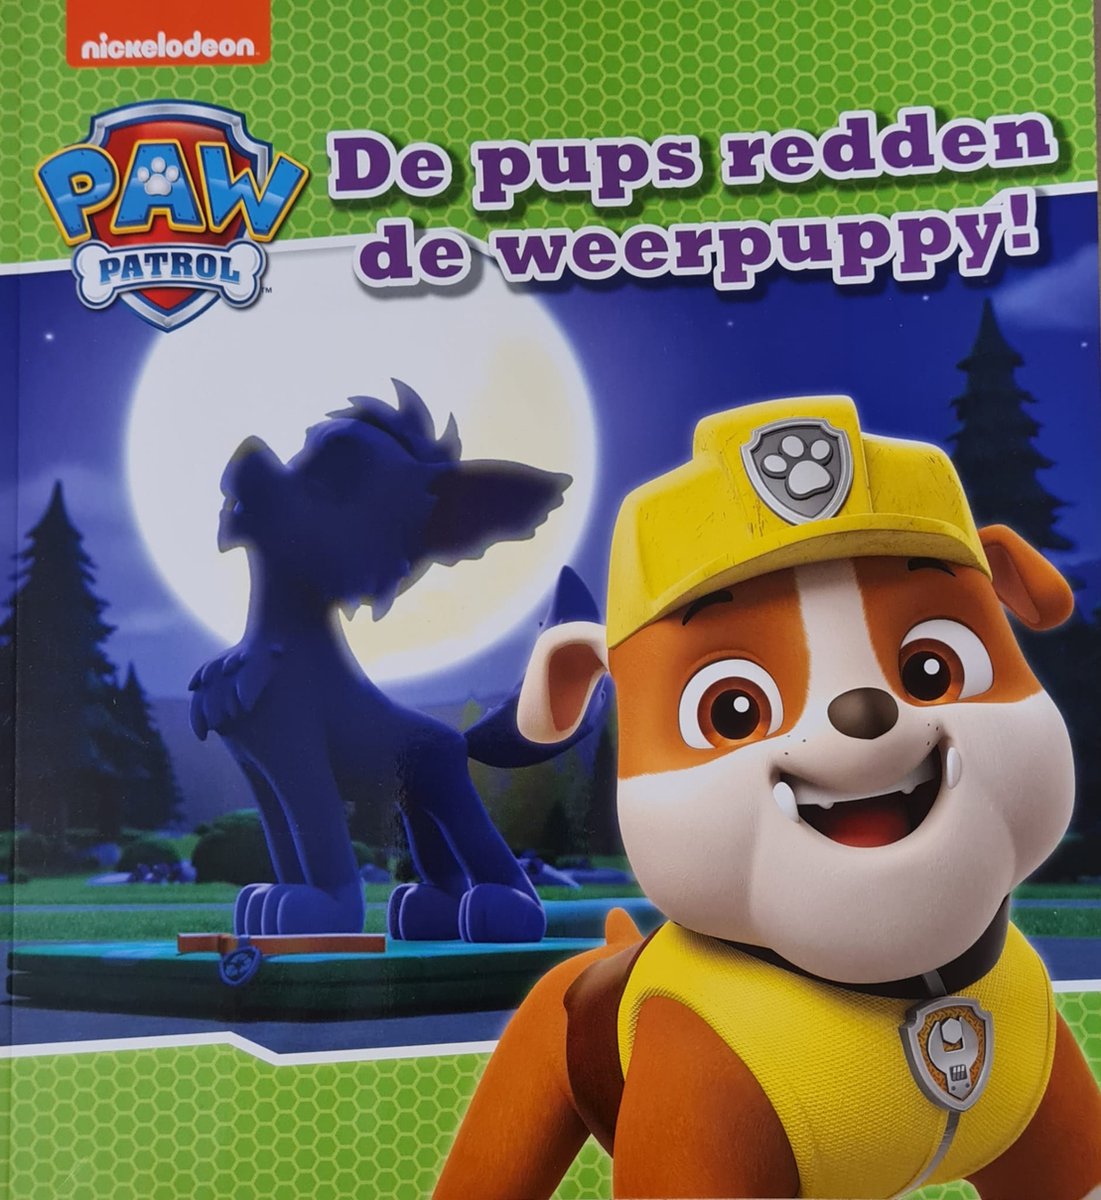 Paw Patrol - De pups redden de weerpuppy! Softcover